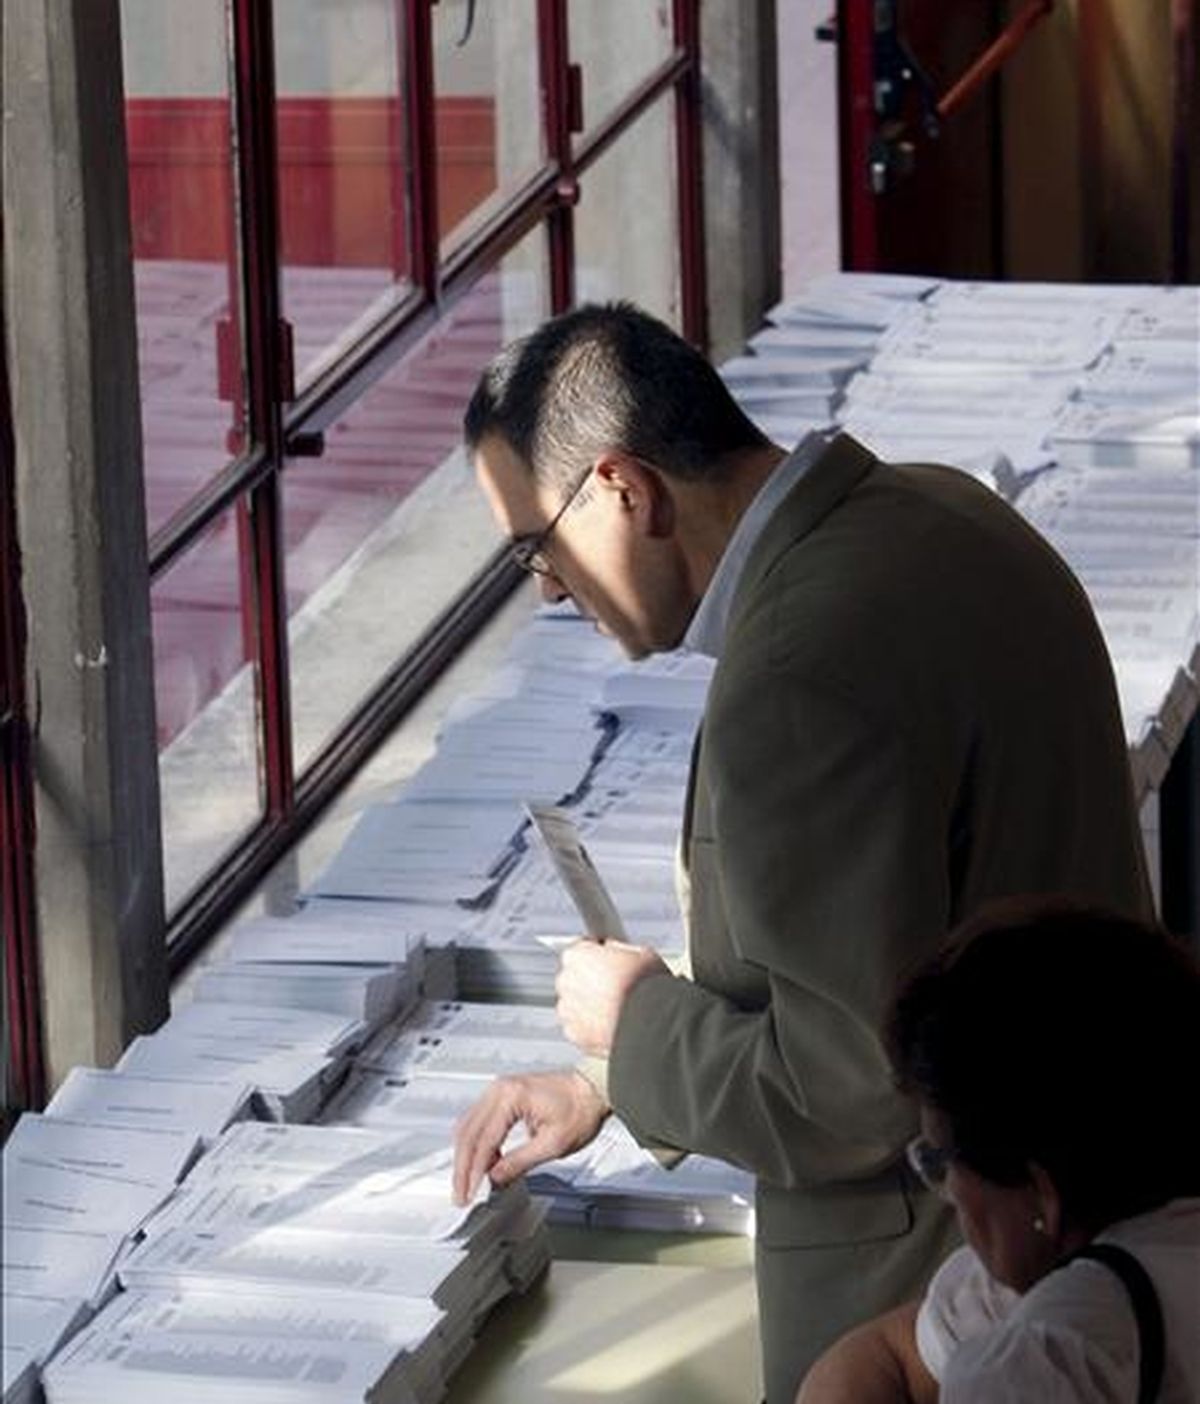 Un ciudadano elige las papeletas antes de ejercer su derecho al voto enlas elecciones al Parlamento Europeo, en el colegio Bernardette de Madrid. EFE/Archivo